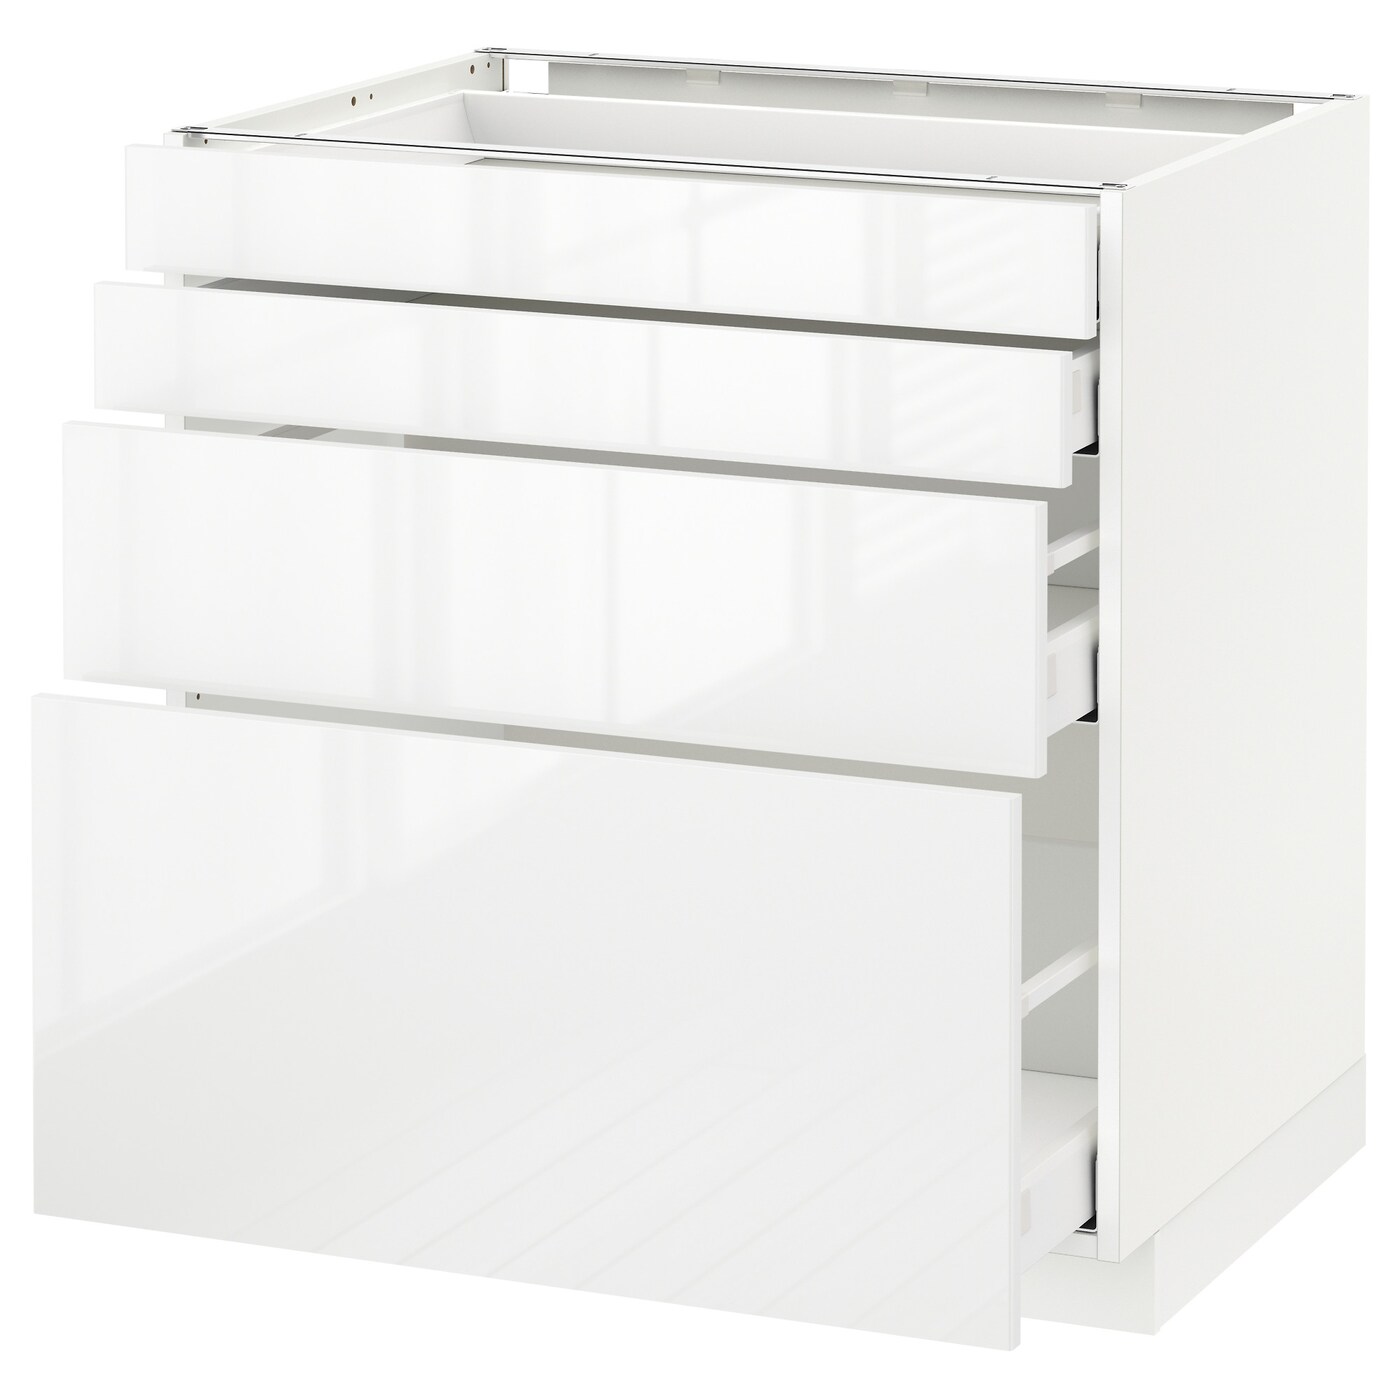 Напольный кухонный шкаф  - IKEA METOD MAXIMERA, 88x61,8x80см, белый, МЕТОД МАКСИМЕРА ИКЕА